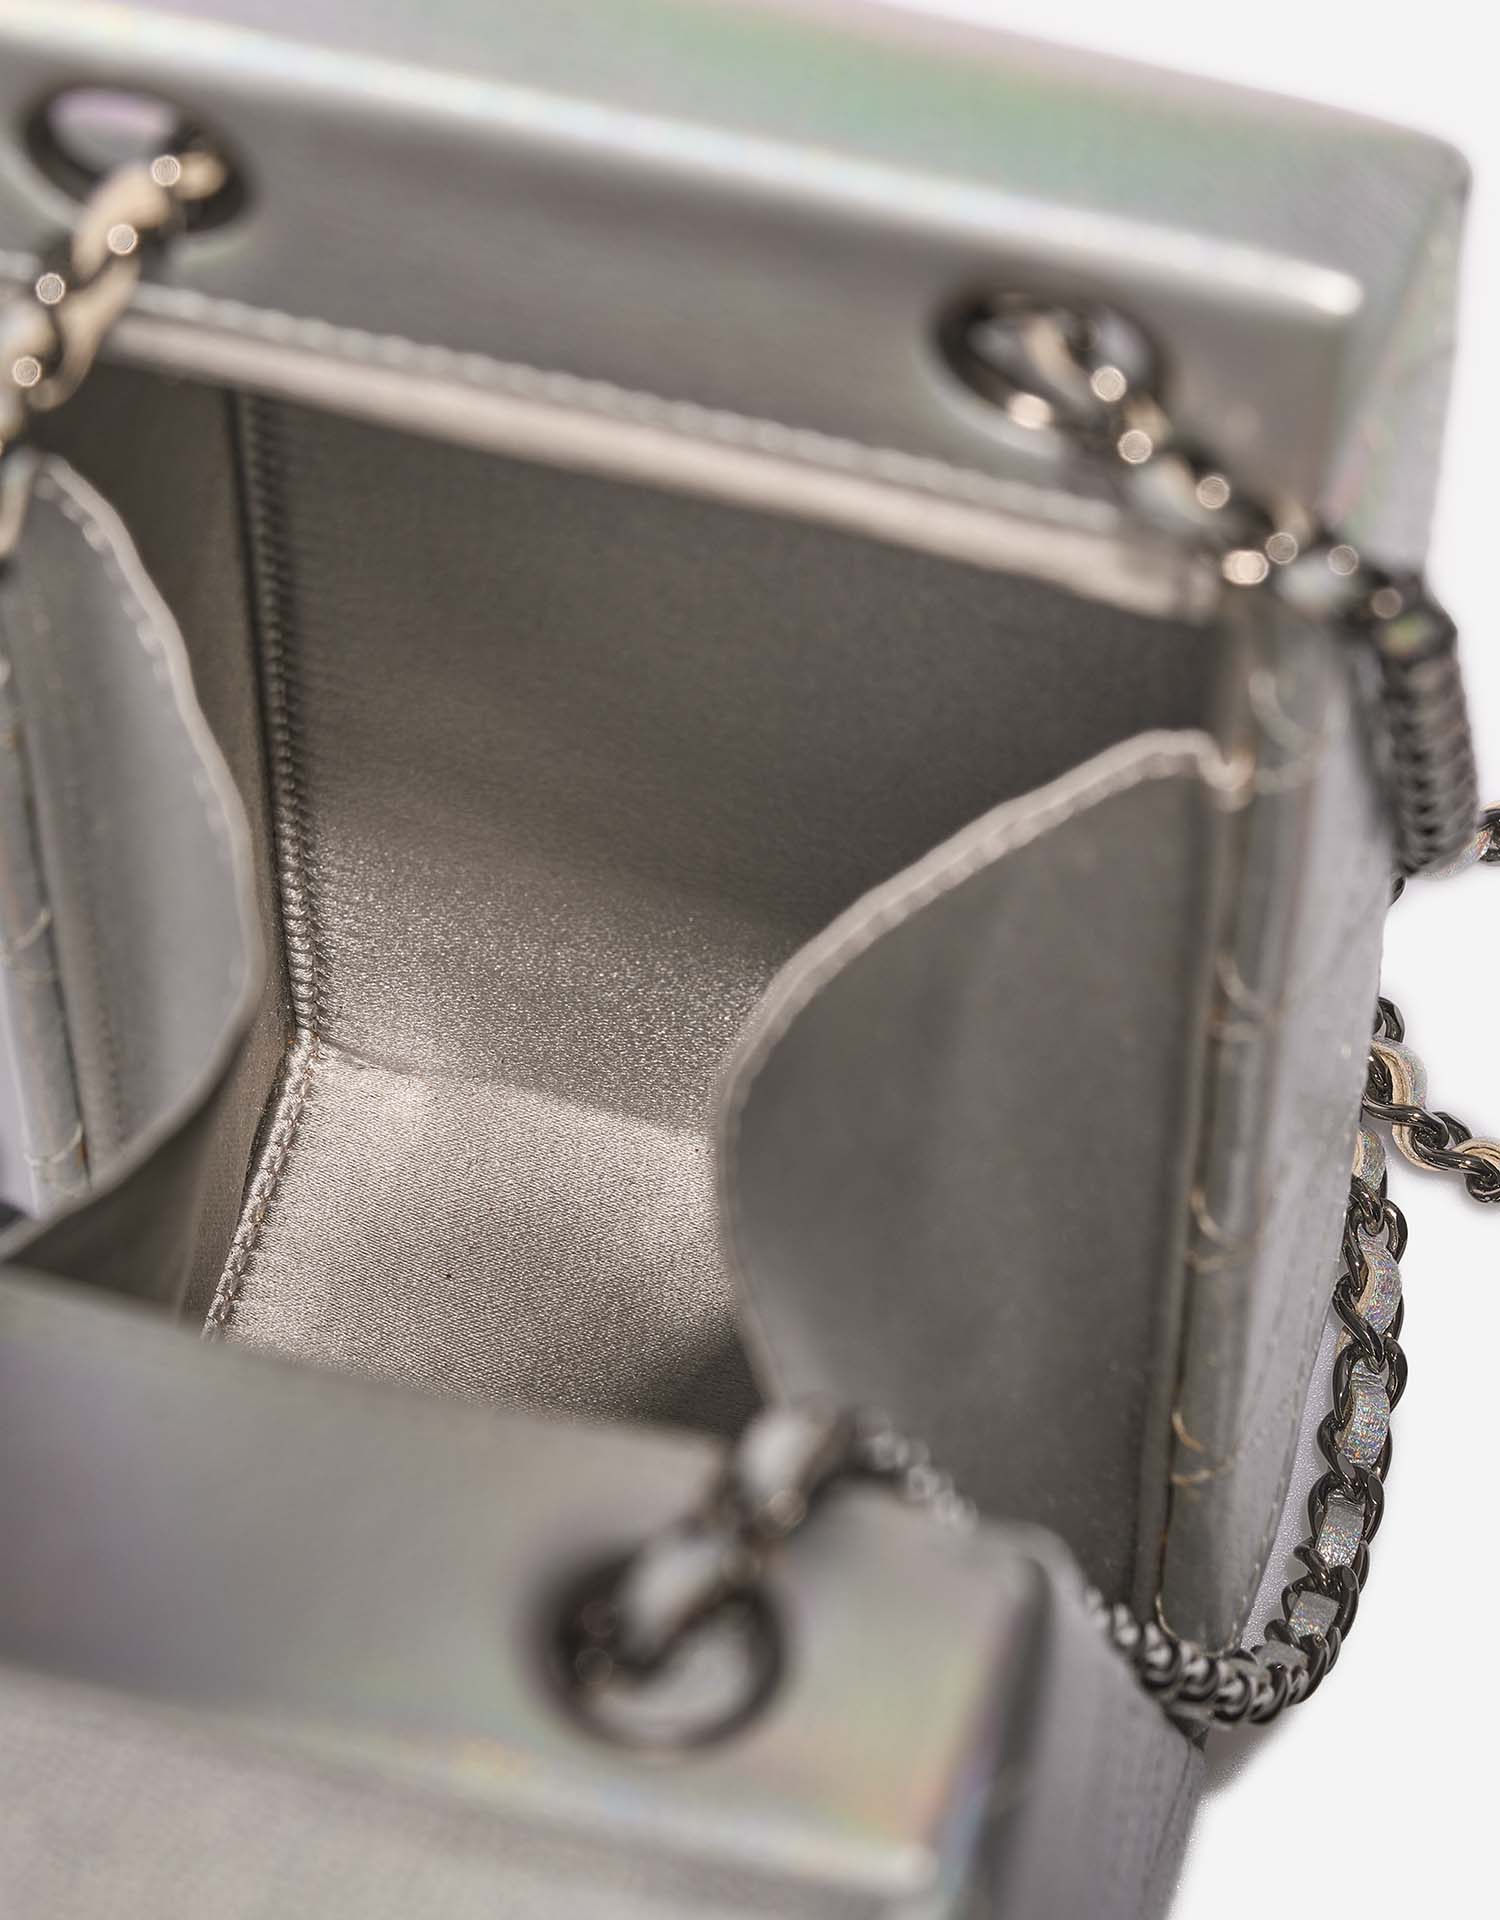 Chanel MilkCarton Silver Inside | Verkaufen Sie Ihre Designer-Tasche auf Saclab.com